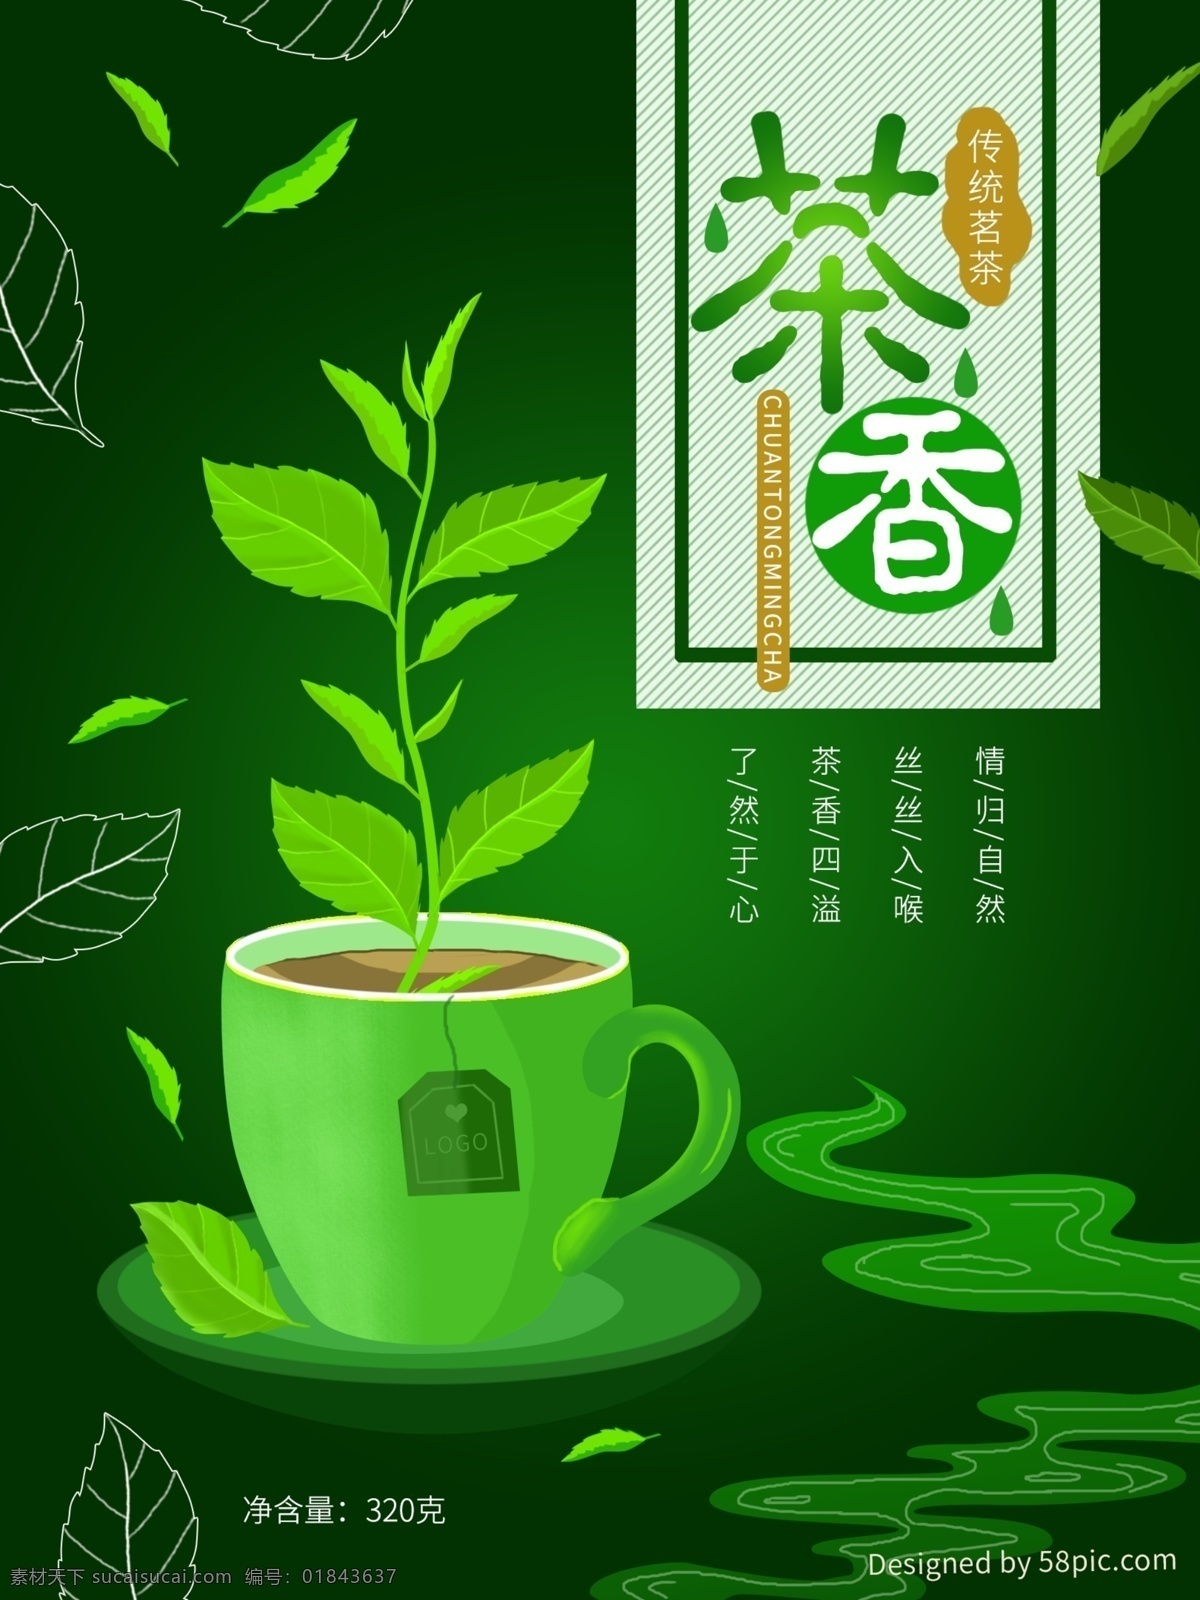 原创 绿色 茶叶 包装 插画 茶 叶子 水杯 茶香 包装素材 小清新